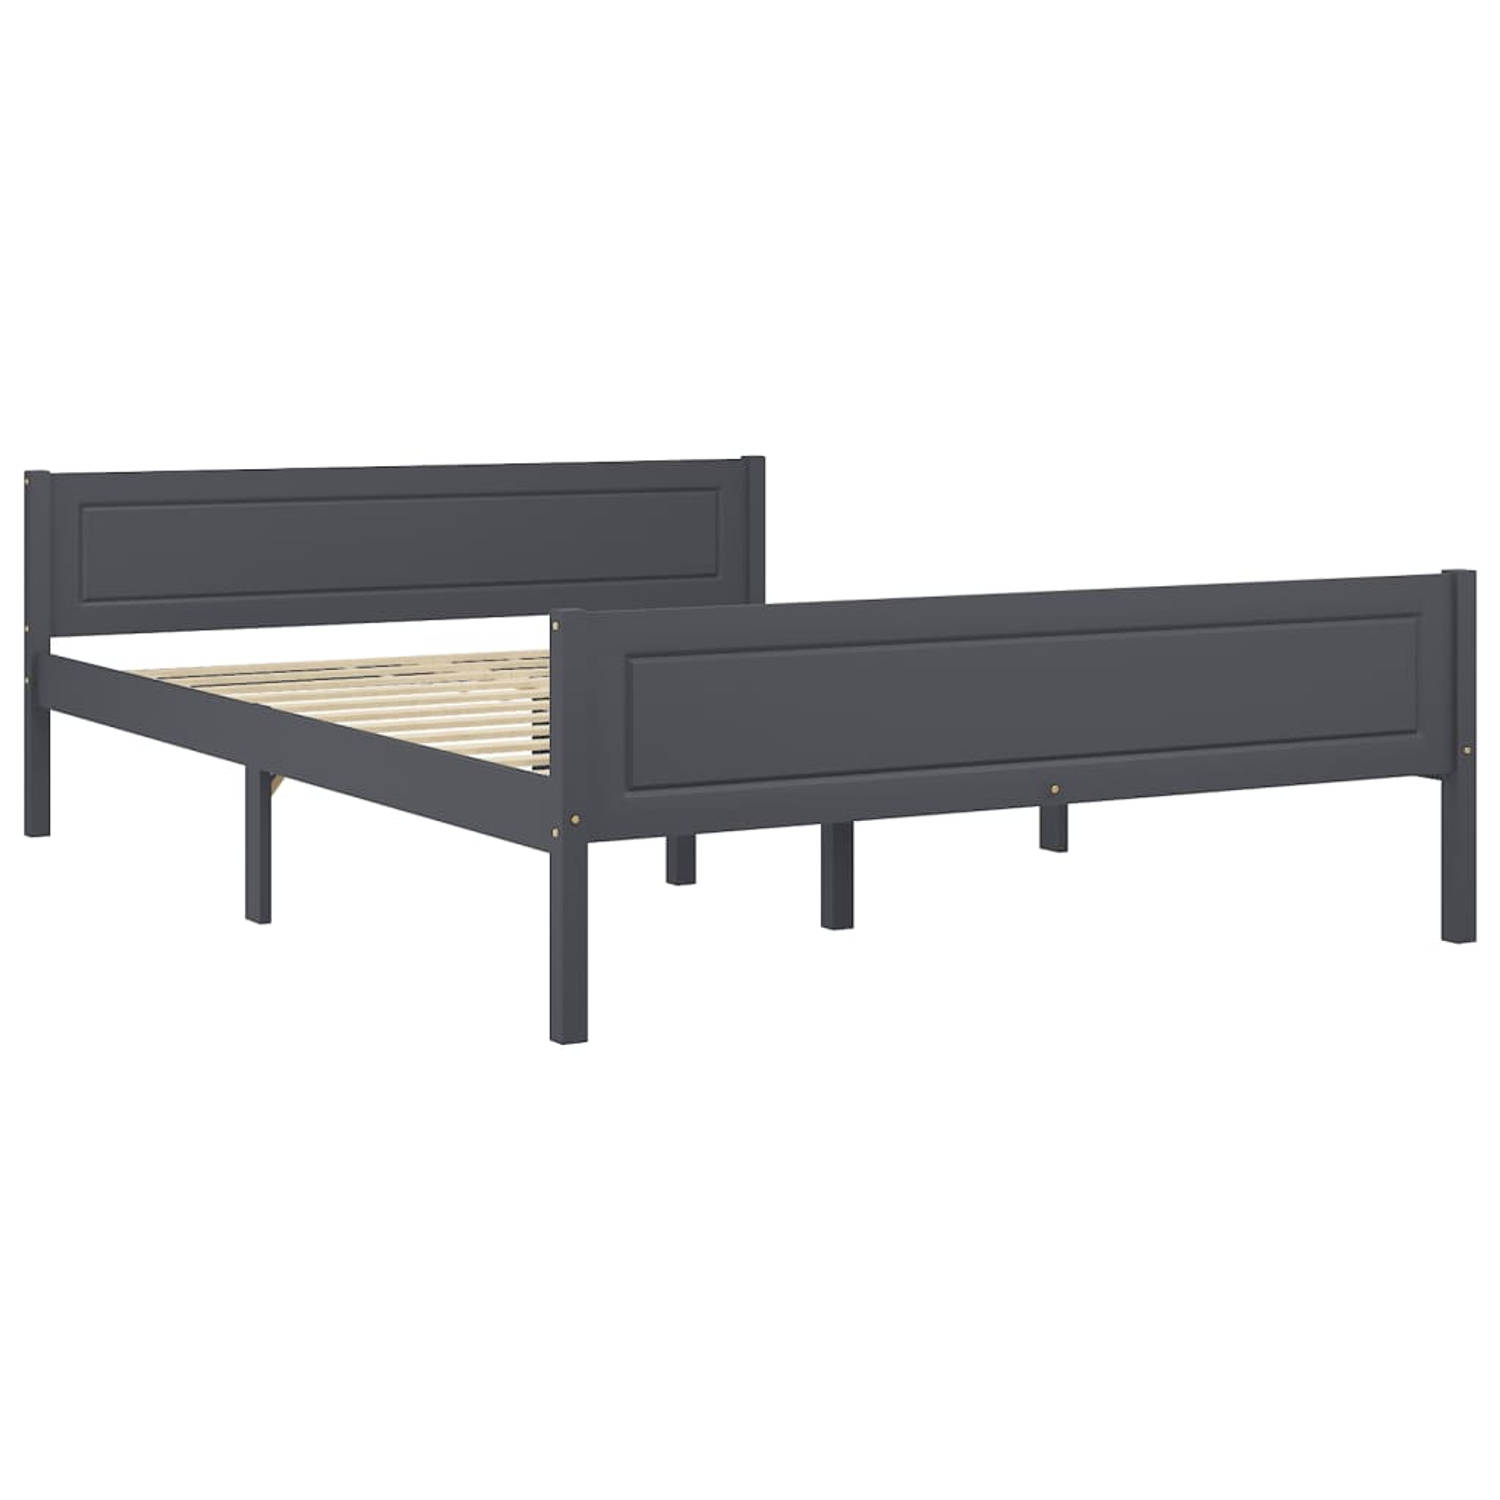 The Living Store Bedframe massief grenenhout grijs 160x200 cm - Bedframe - Bedframe - Bed Frame - Bed Frames - Bed - Bedden - 2-persoonsbed - 2-persoonsbedden - Tweepersoons Bed